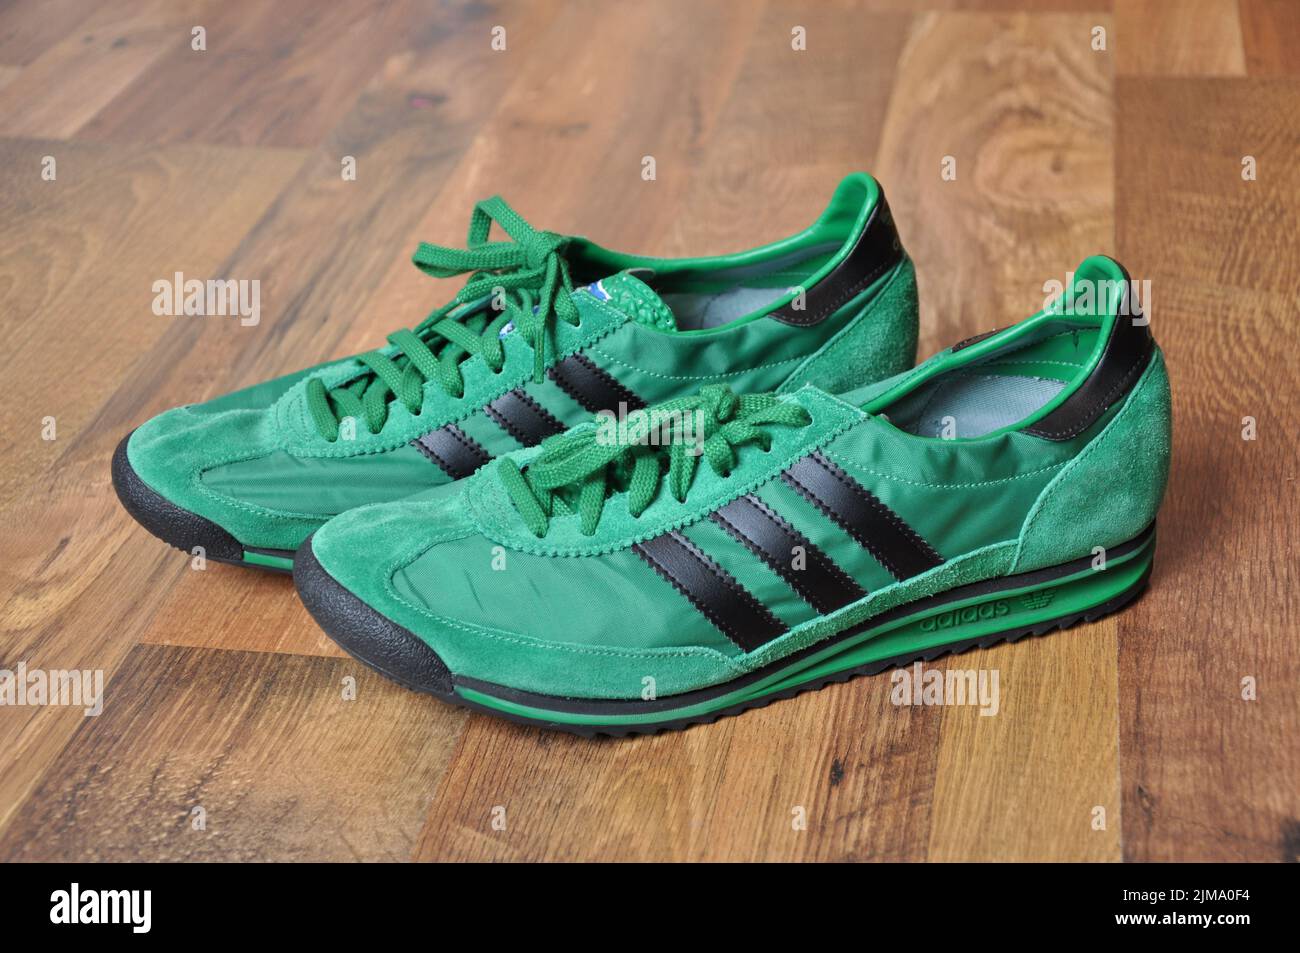 Un gros plan des sneakers vertes Adidas rétro pour coureurs. Banque D'Images